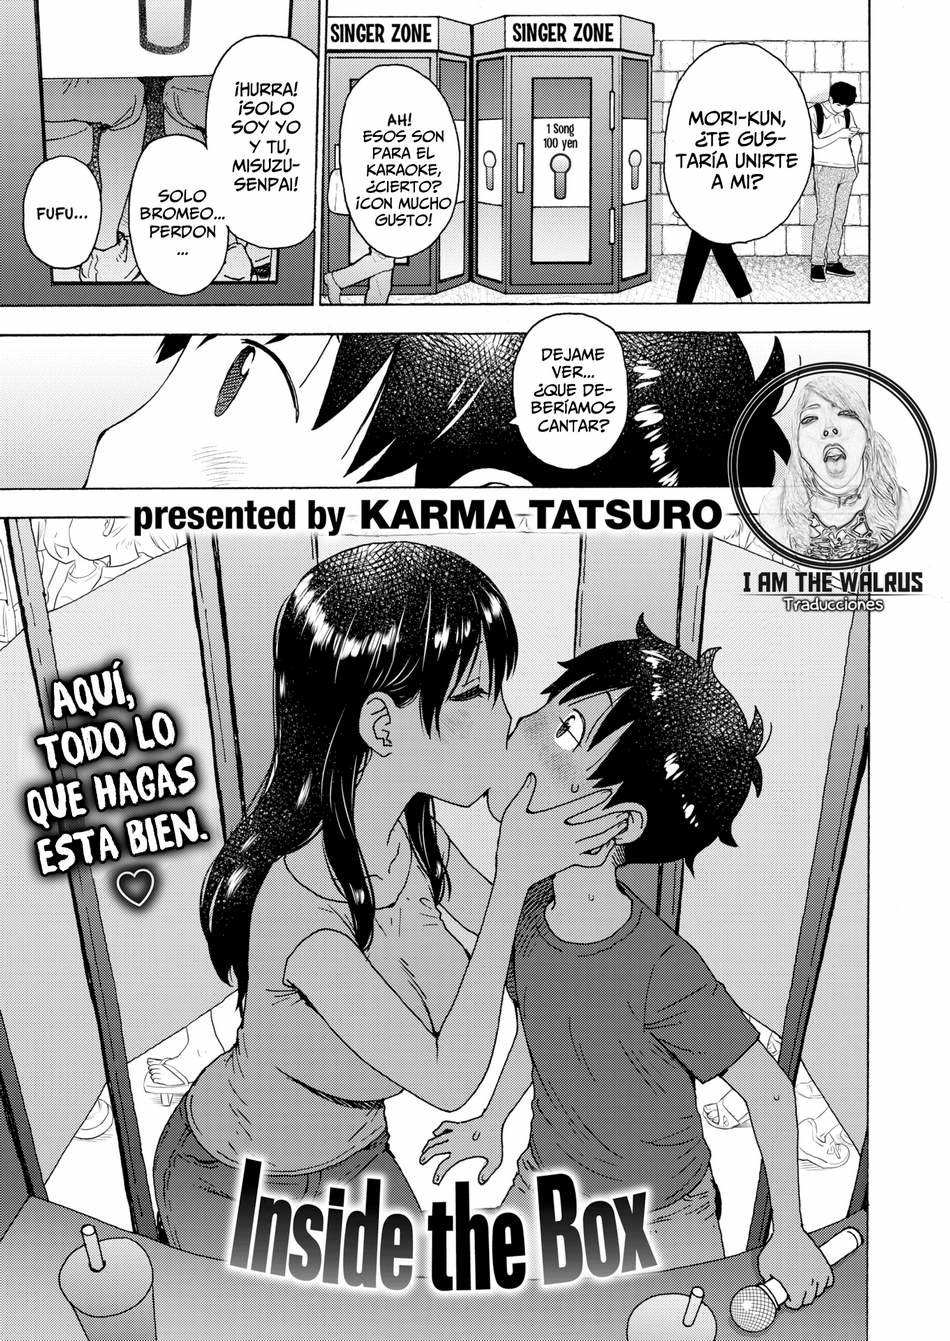 Dentro de la caja - Karma Tatsurou - 0